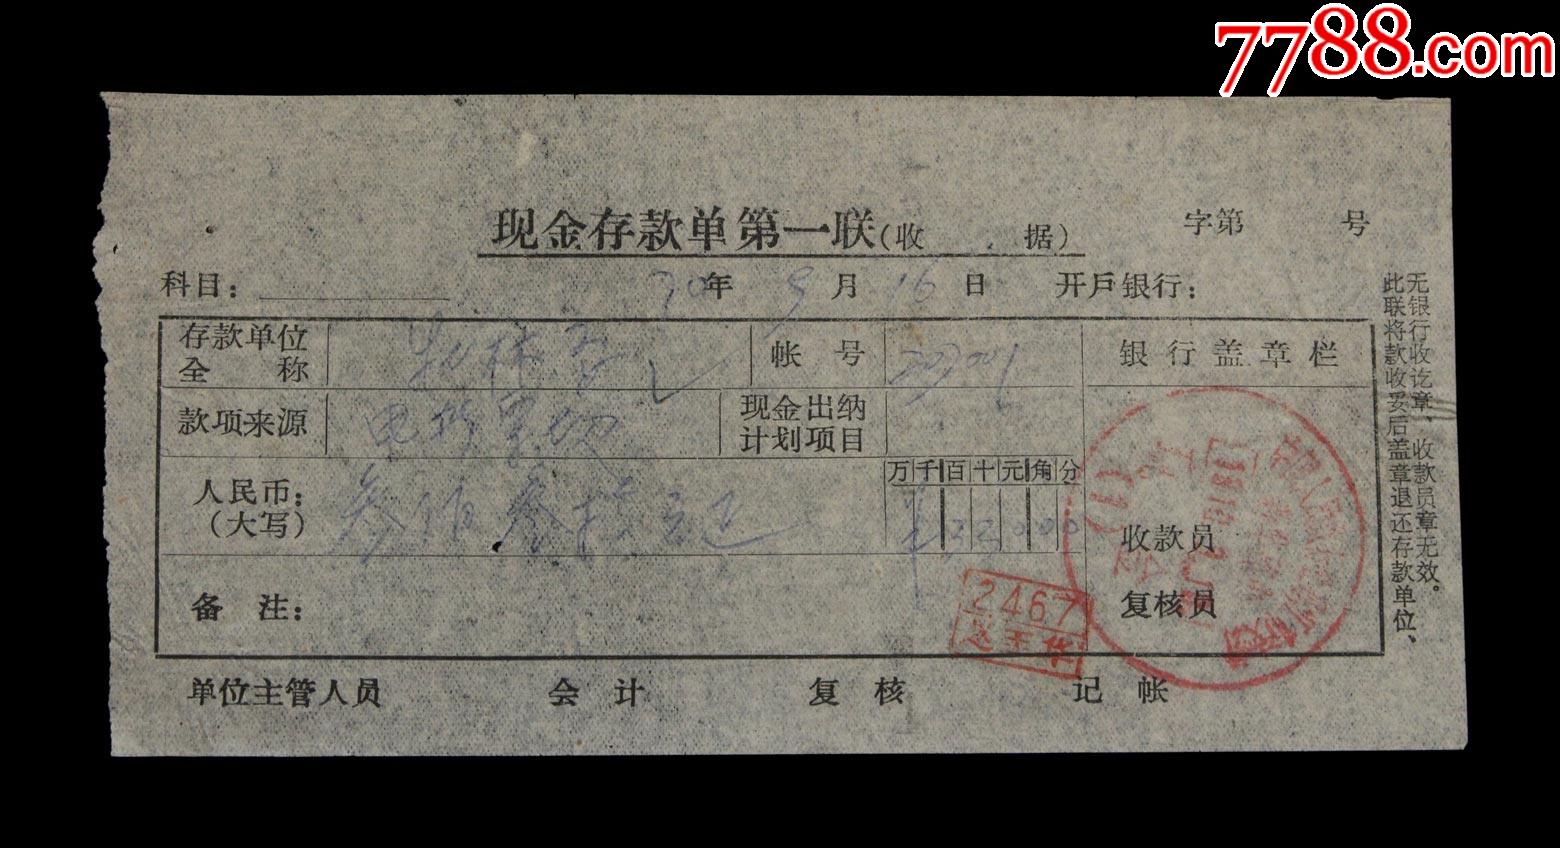 1970年中国人民银行牡丹江市支行新华路办存款单据一张